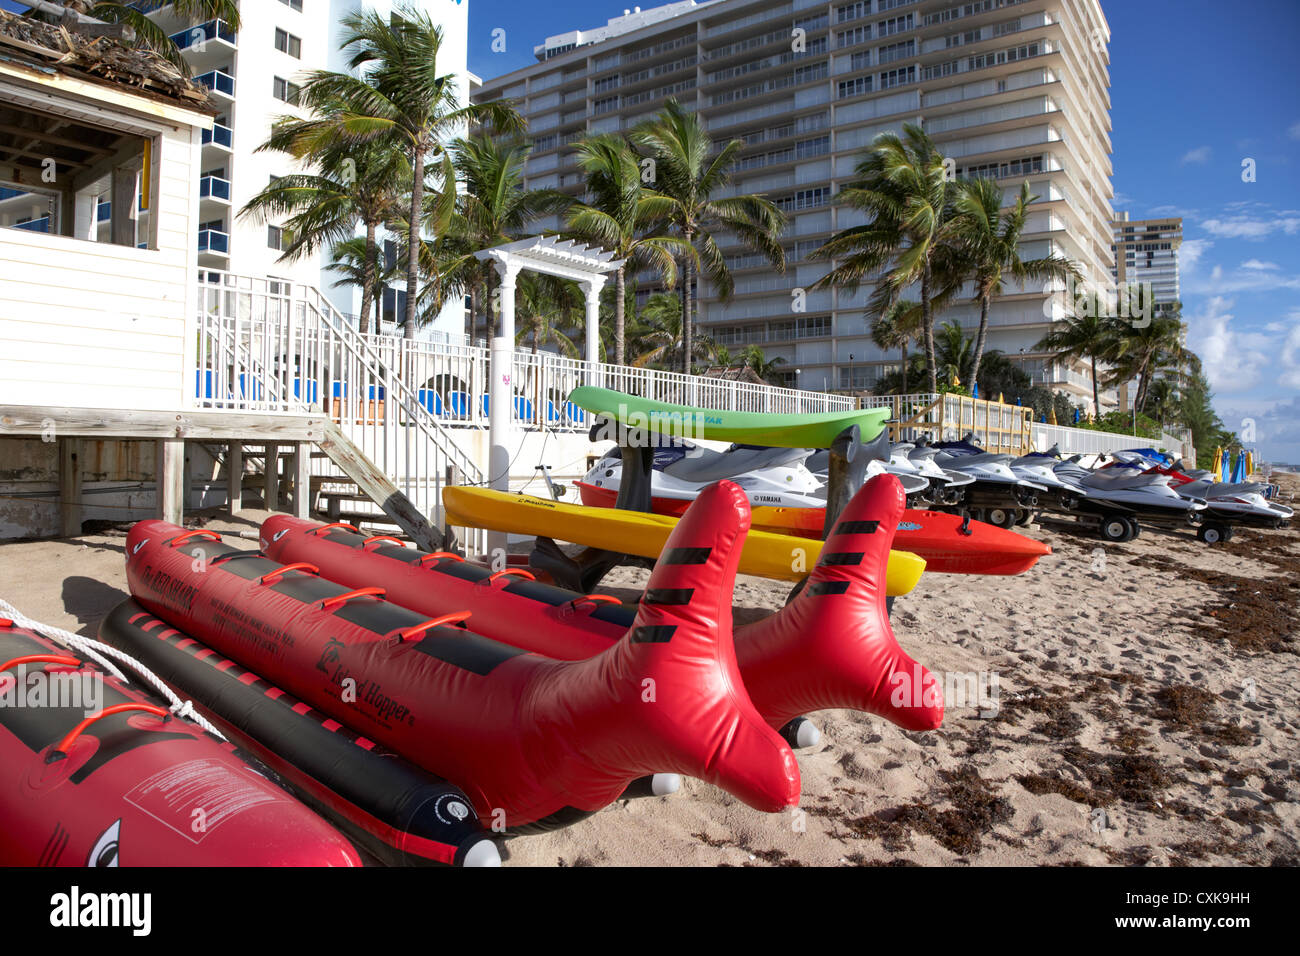 Wassersportgeräten vor vermieten von Ferienwohnungen Hotels und am Strand Entwicklungen Fort Lauderdale beach Florida usa Stockfoto